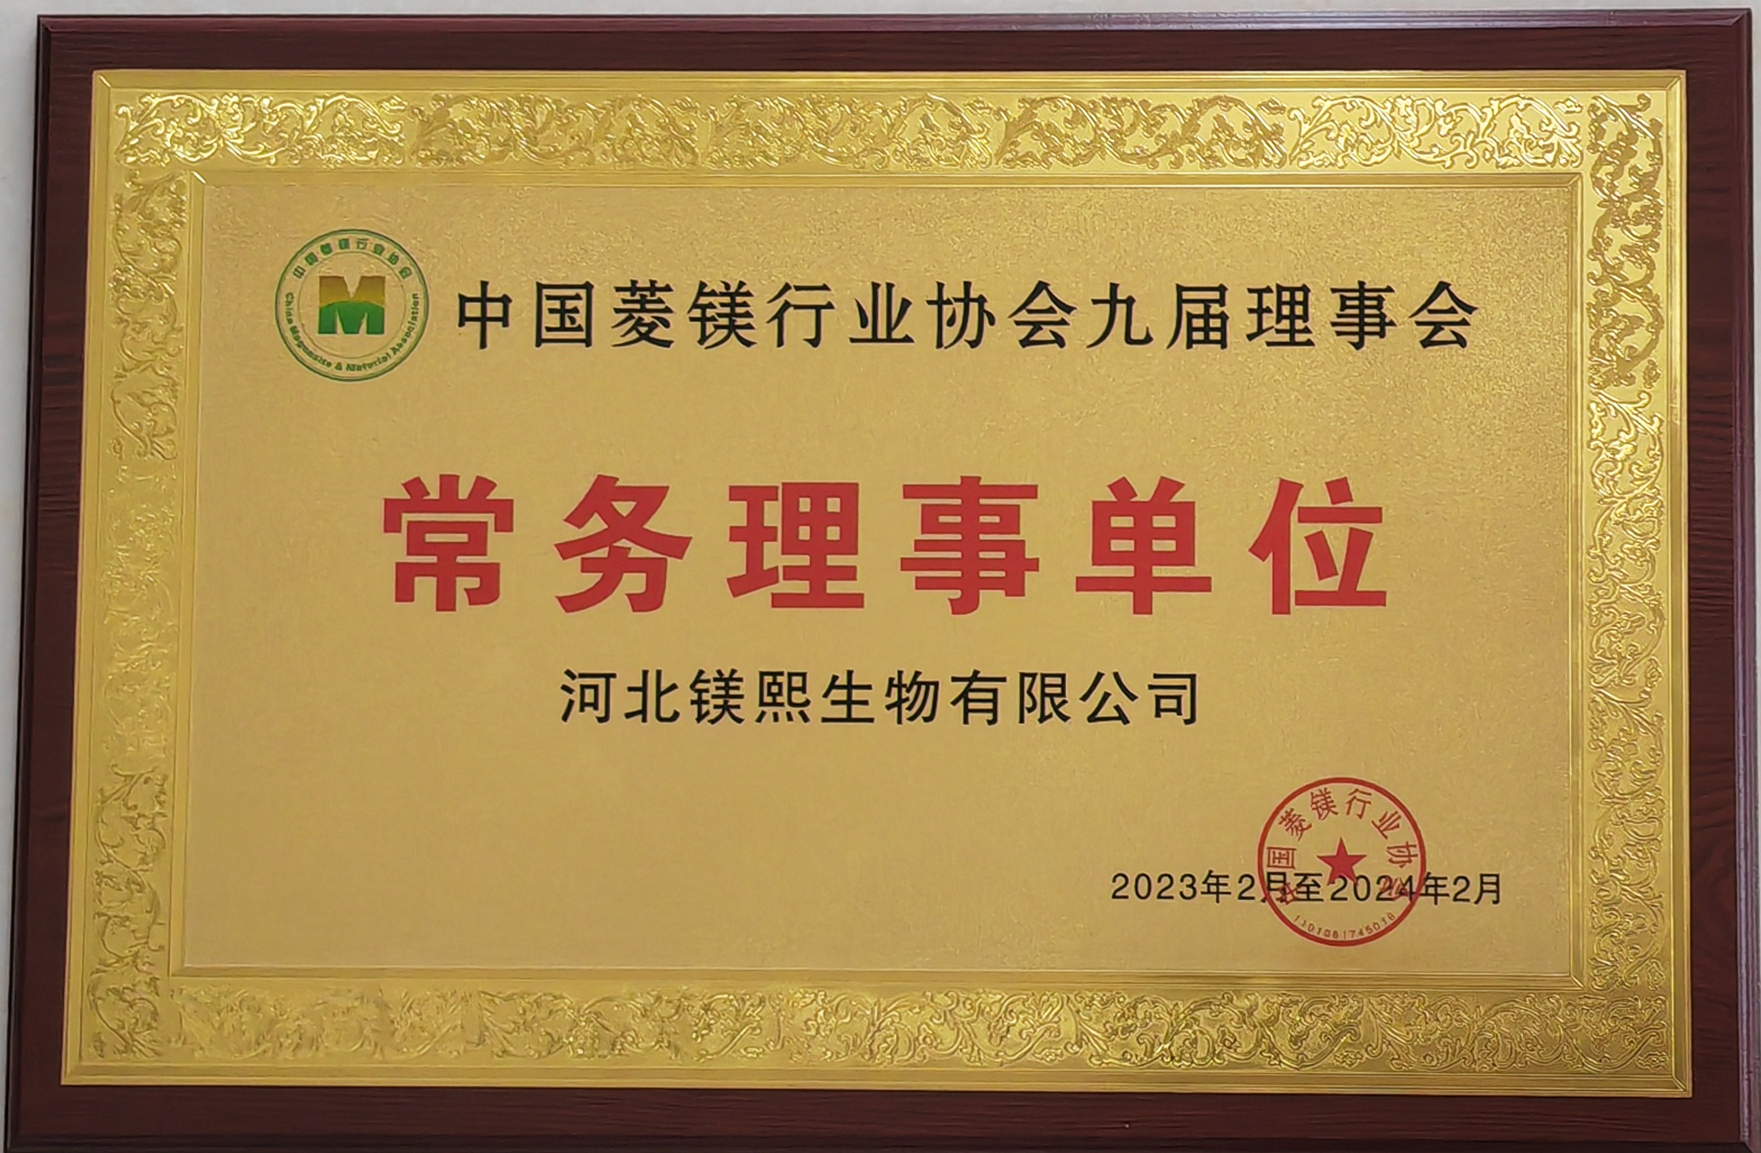 中国菱镁行业协会常务理事单位